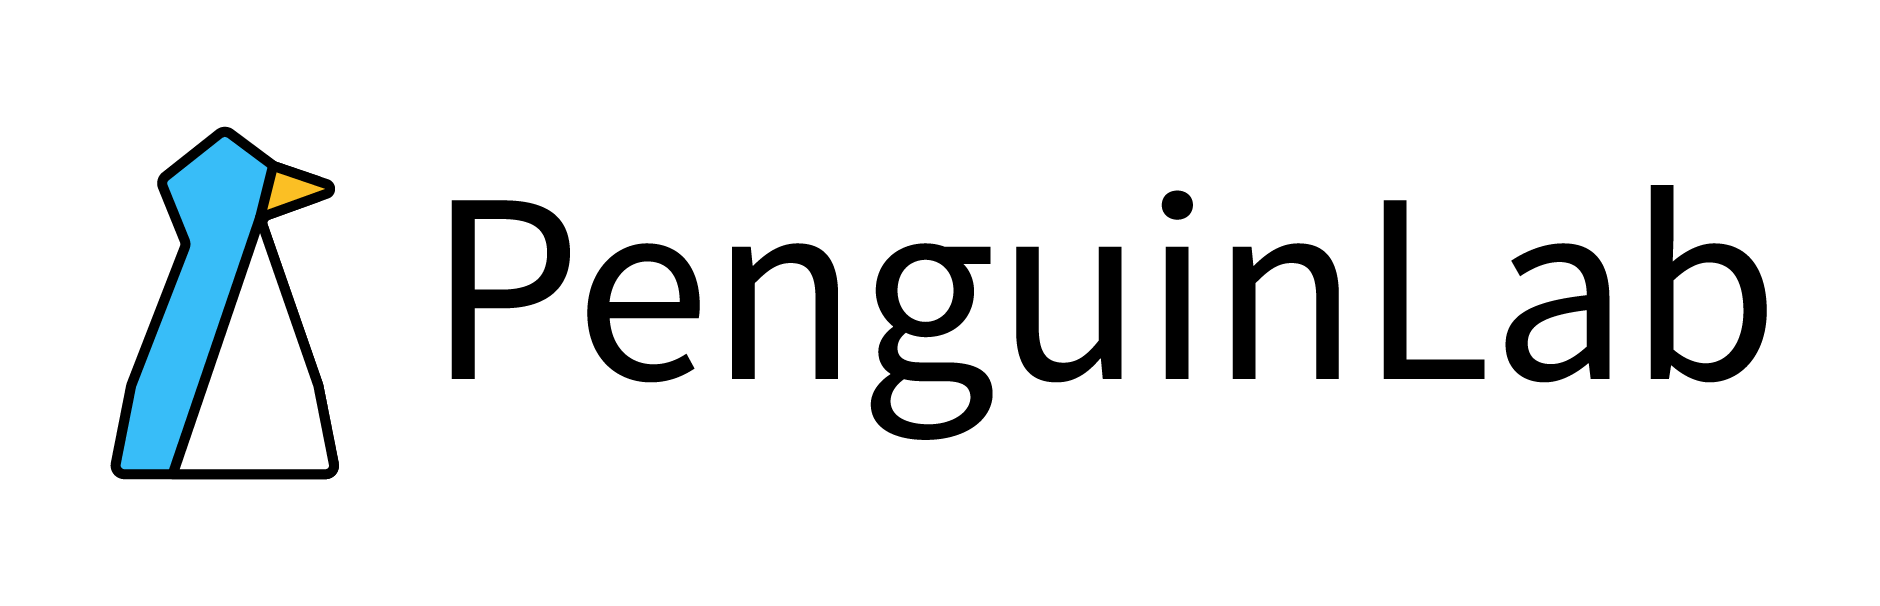 PenguinLabs logo